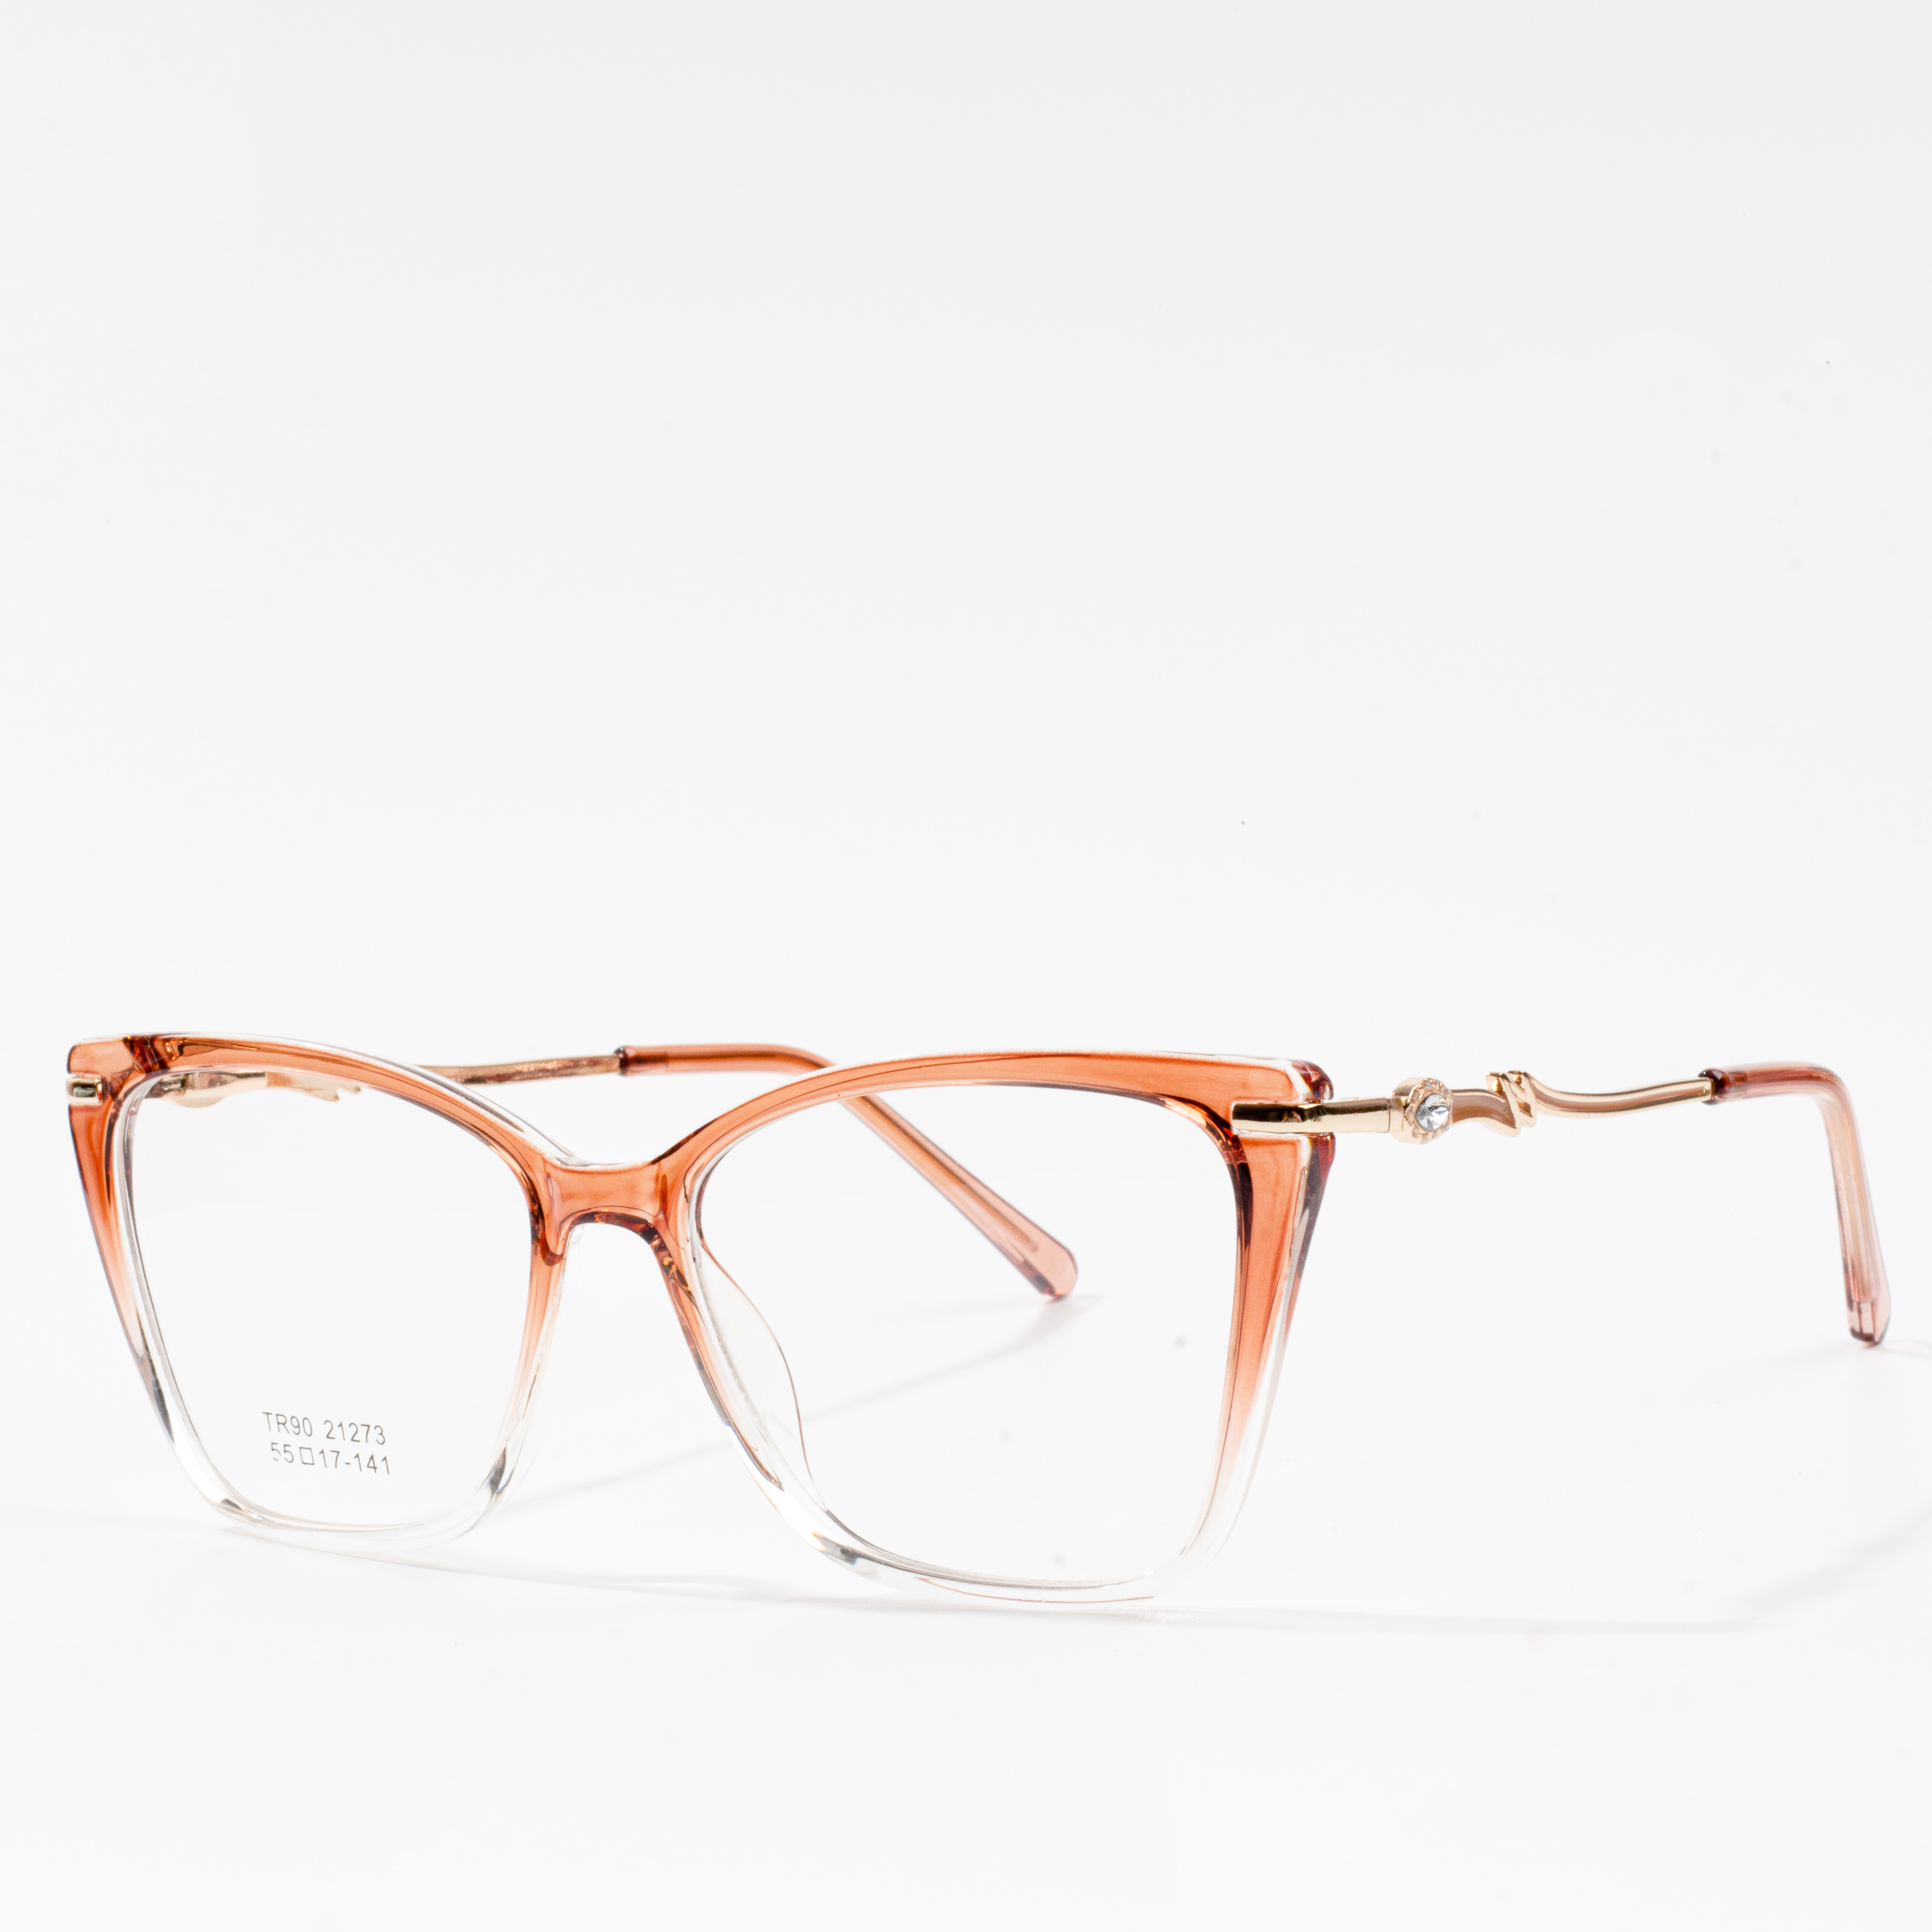 I-eyeglass frame